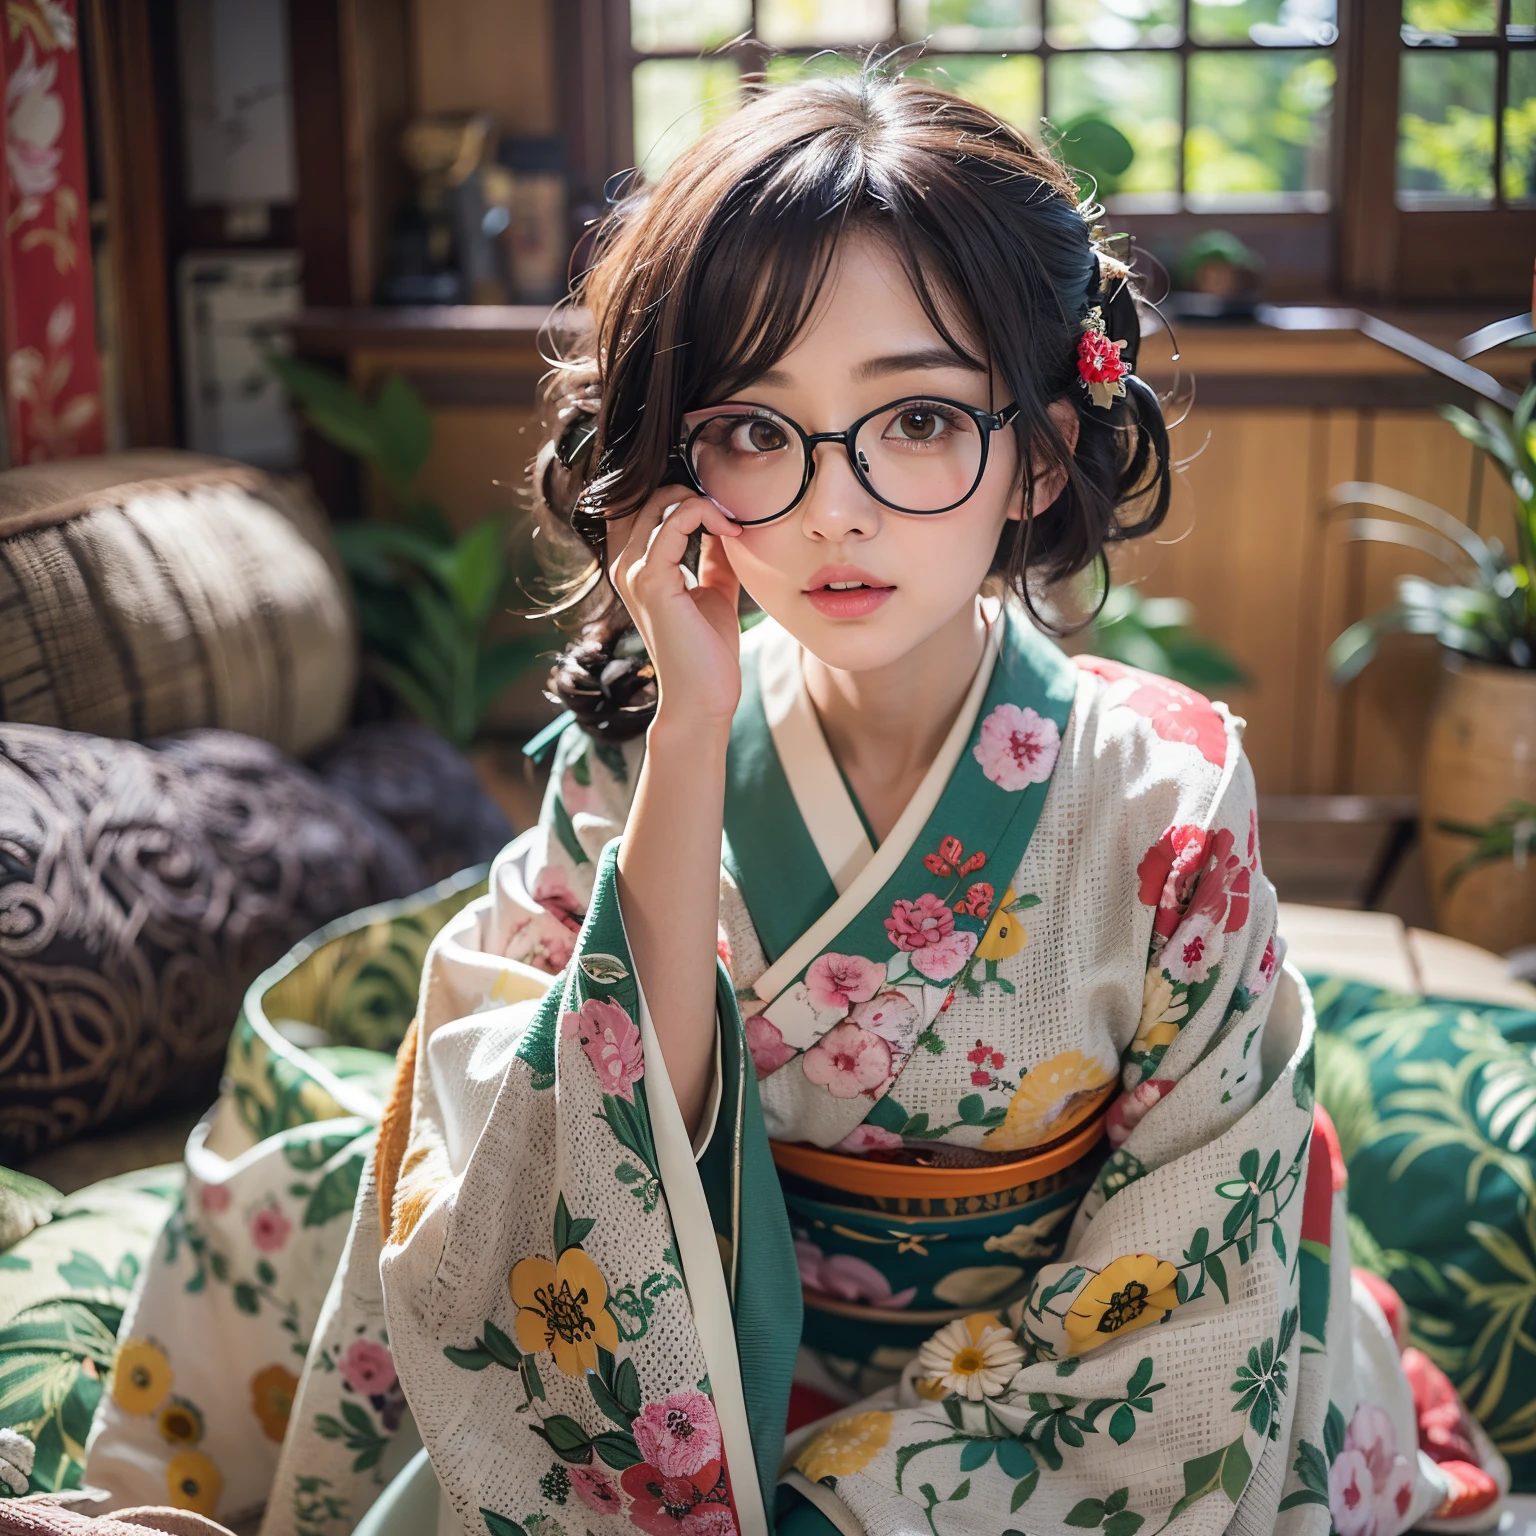 最好的质量, 杰作, 超高分辨率, (真实感:1.4), 原始照片, 极其详细, 完美解剖学, 1女孩, 最受欢迎的日本模特, 穿着日本和服，戴着设计可爱的眼镜, 传统日语中的“坐姿 SEIZA”,房间, 向前倾, 像日本最著名的模特一样美丽的脸, 非常漂亮的大黑实心圆圈眼睛, 非常漂亮逼真的皮肤, 非常漂亮的黑色短发, 非常漂亮的大乳房, 非常漂亮的乳沟, 详细的日本和服, 设计可爱的精致眼镜, 详细美丽的脸, 细致的眼睛, 细致逼真的皮肤, 详细的黑色短发, 详细的大乳房, 详细乳沟, detailed traditional Japanese 房间